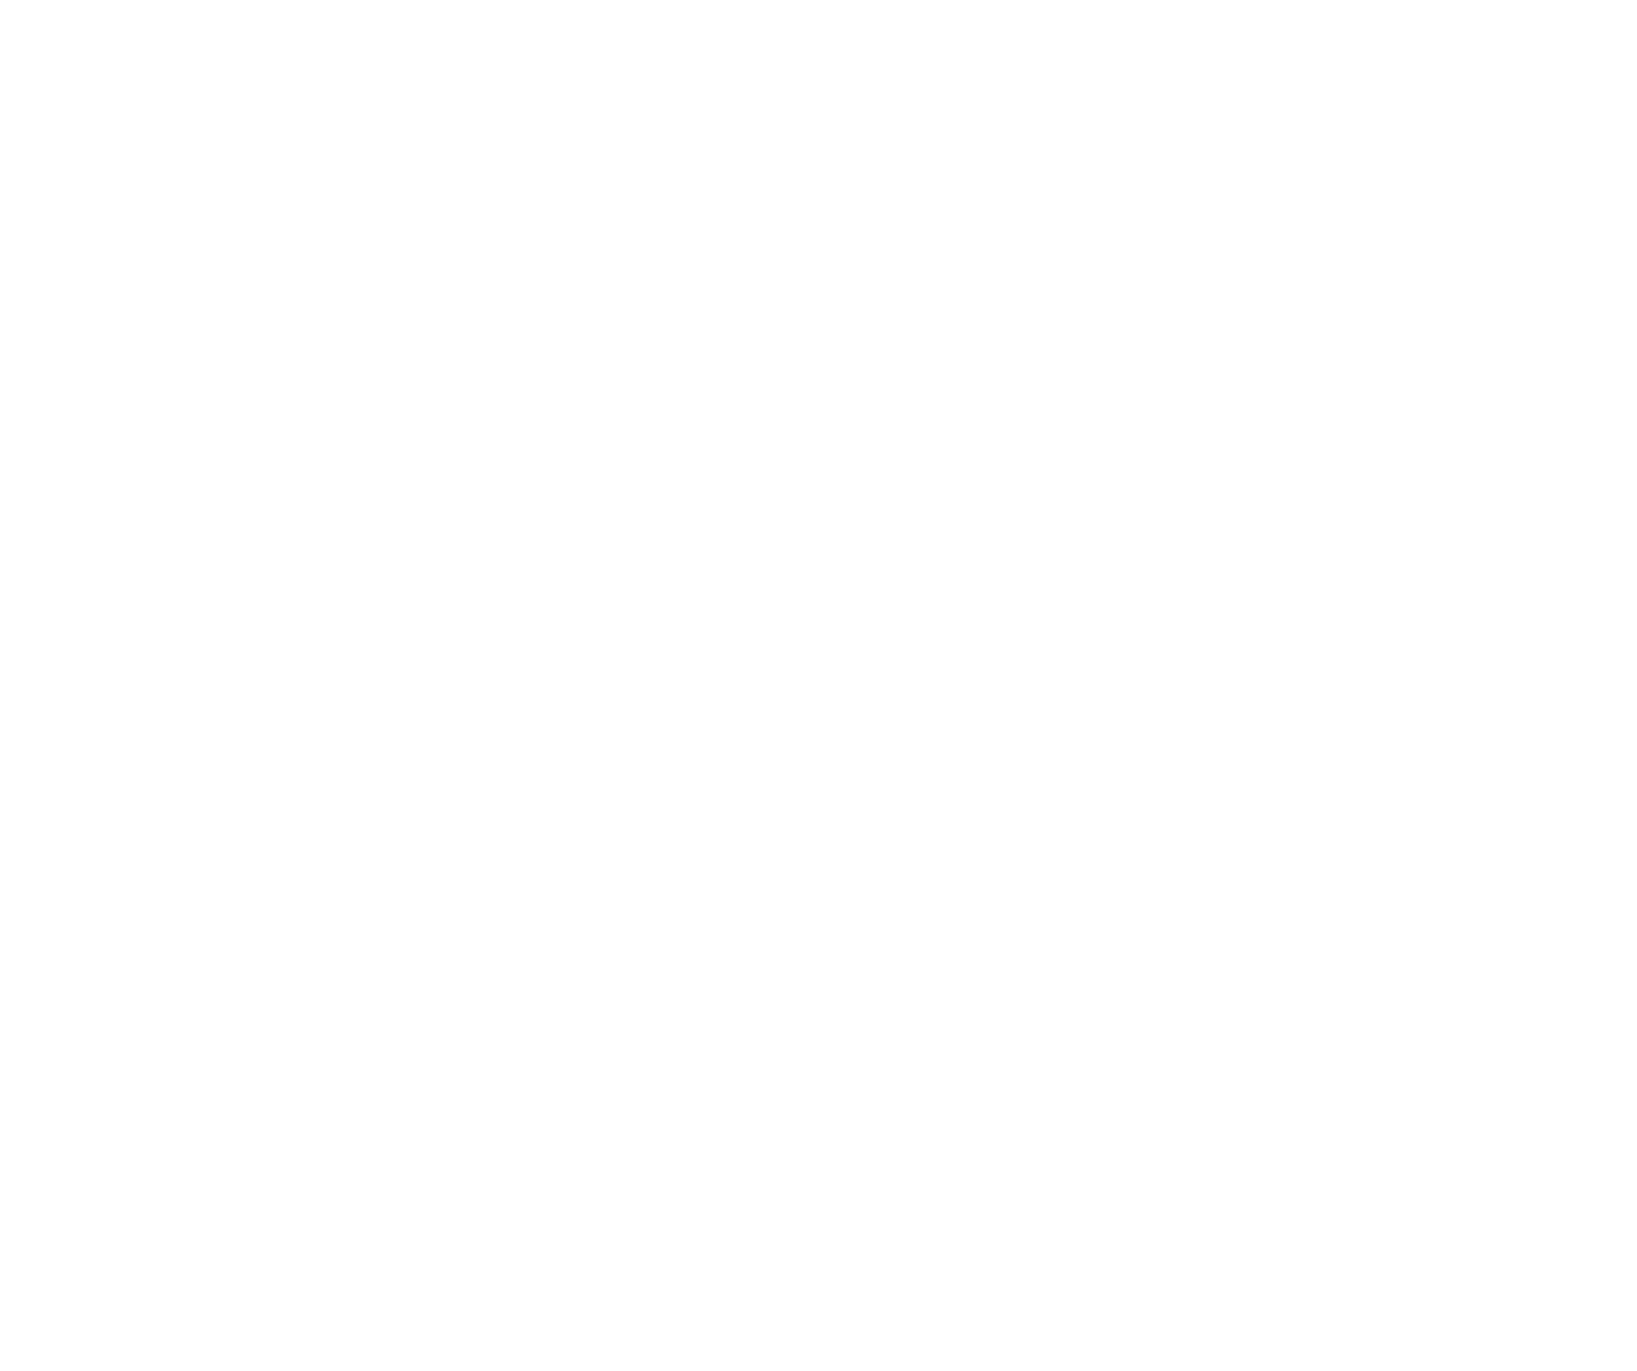 DOTOWN HOUSE